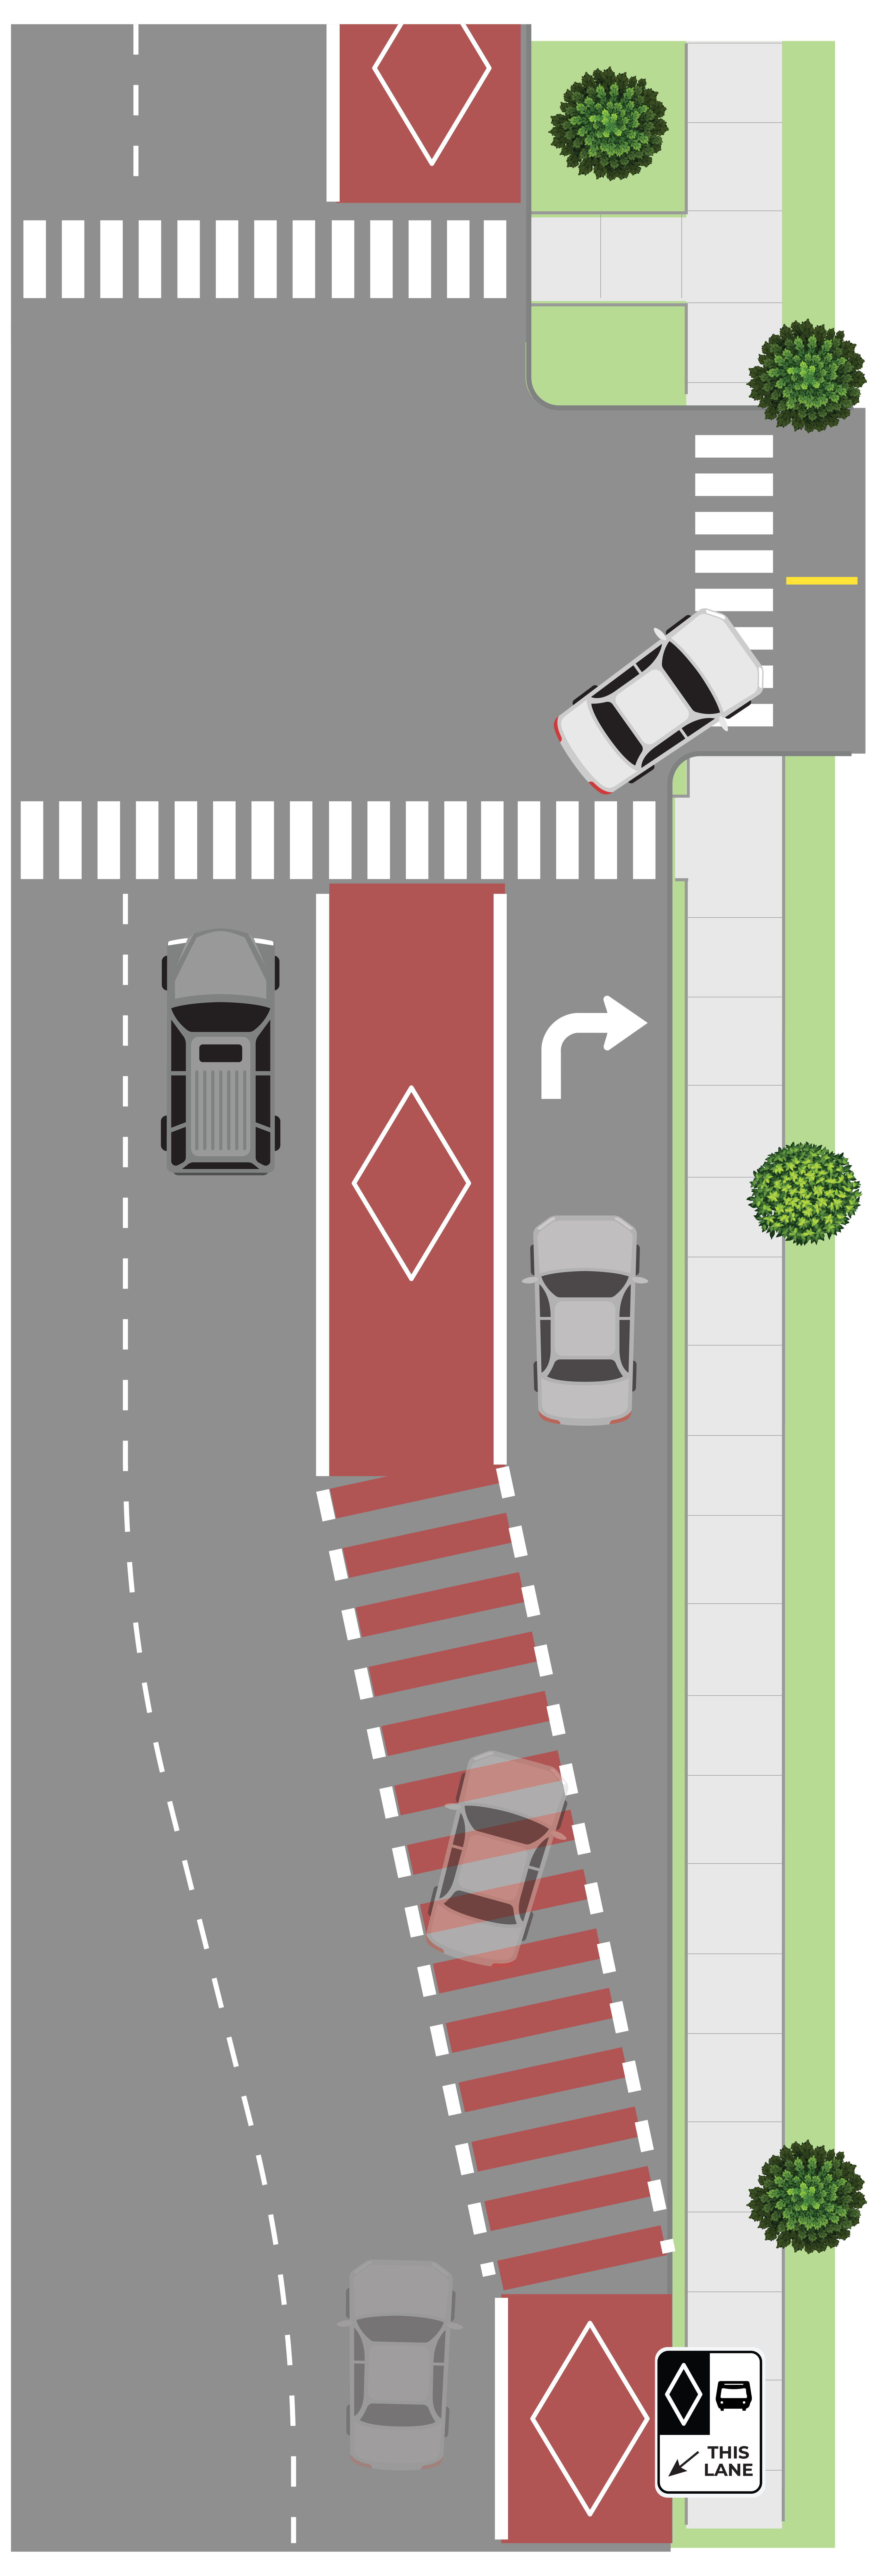 Bus lane lane crossing graphic